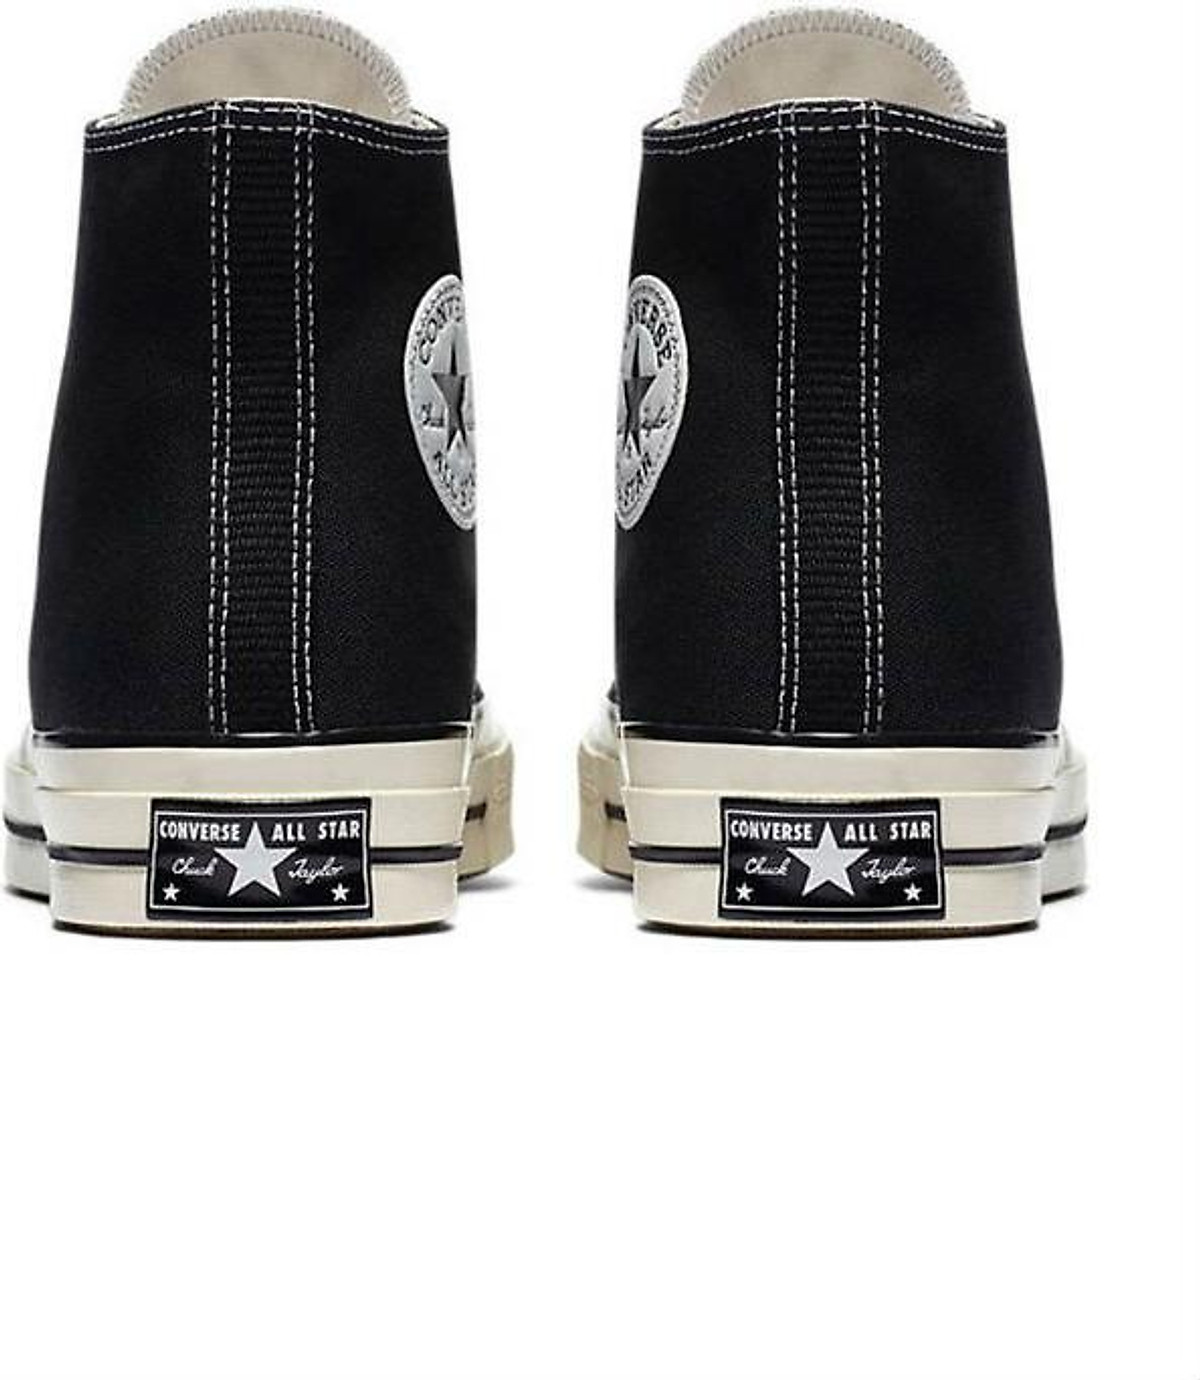 Mua Giày Sneaker Unisex Converse Chuck Taylor All Star 1970s 2018 - Black/w  (Size 35) tại WearVN